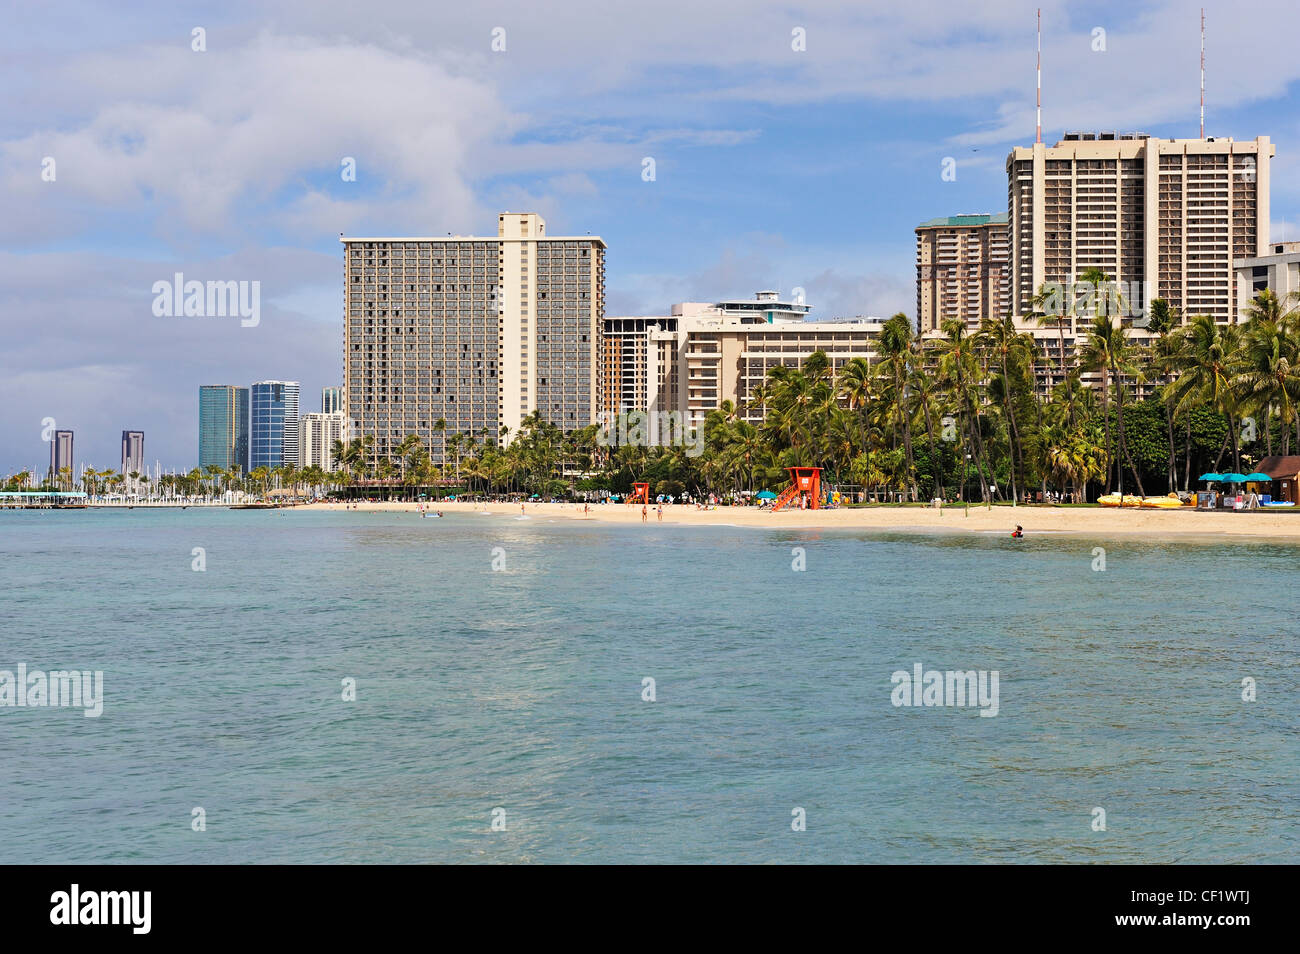 Waikiki beach front de mer, vue de l'océan, Honolulu, Oahu, Hawaii Islands, USA Banque D'Images